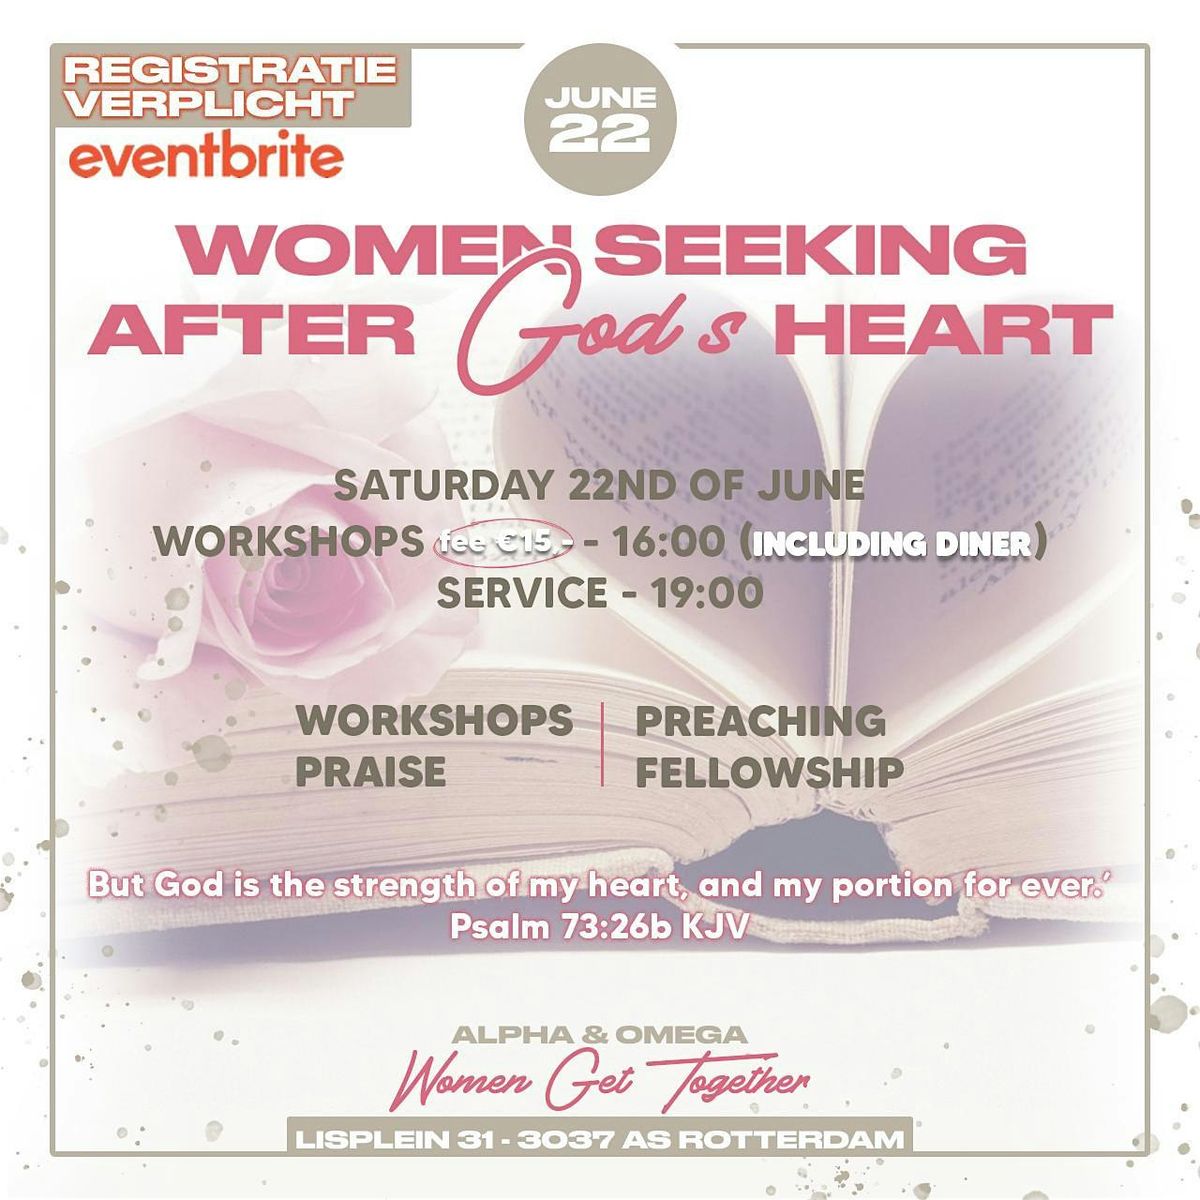 Women get together \/Women seeking after God's heart's heart